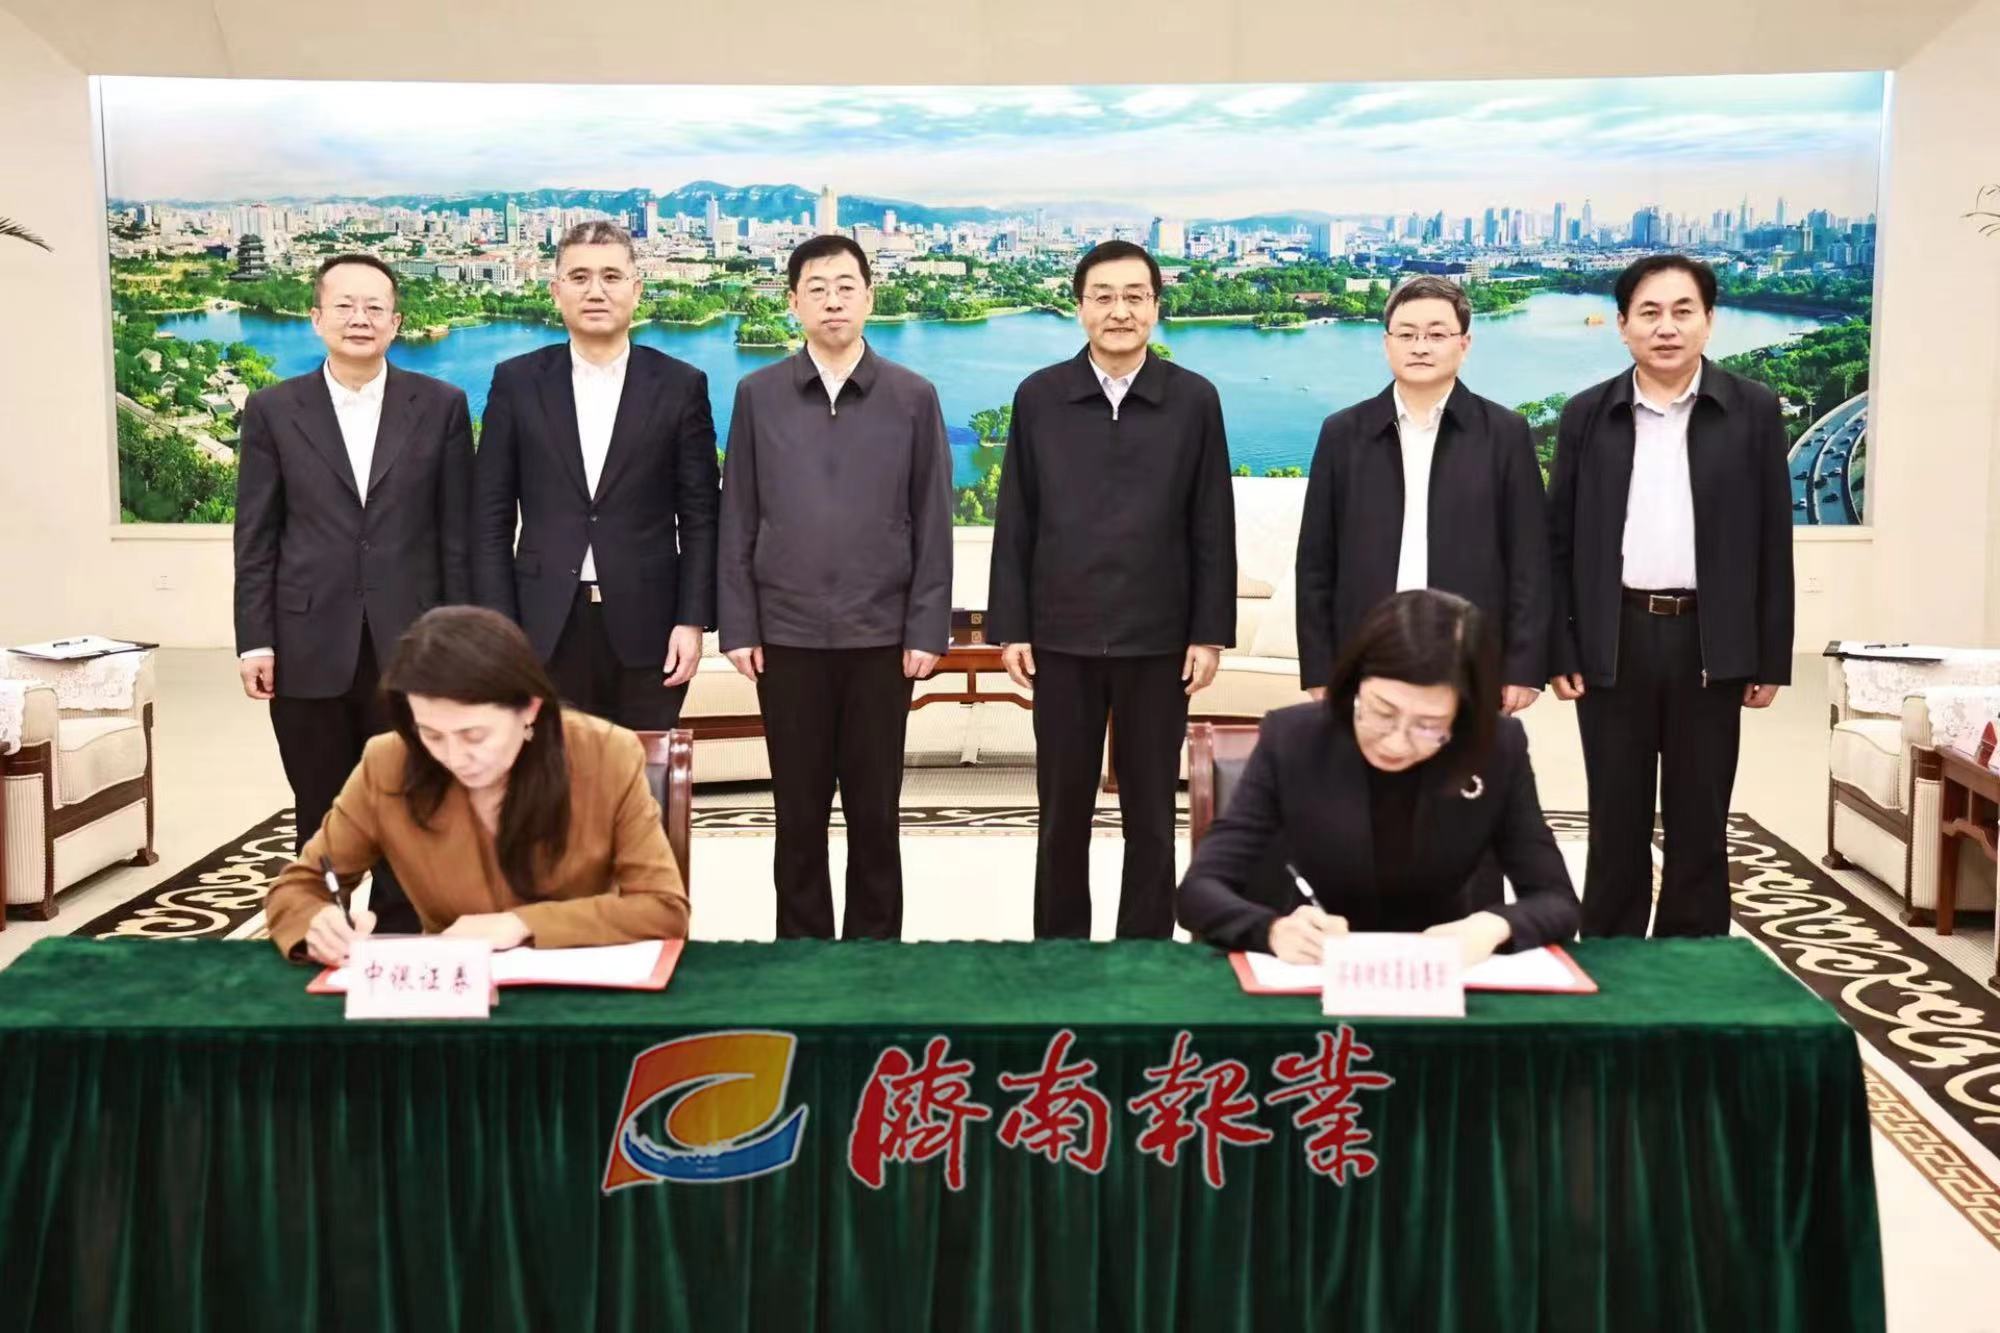 济南市政府与中国银行签署合作协议 刘强于海田会见葛海蛟一行并见证签约